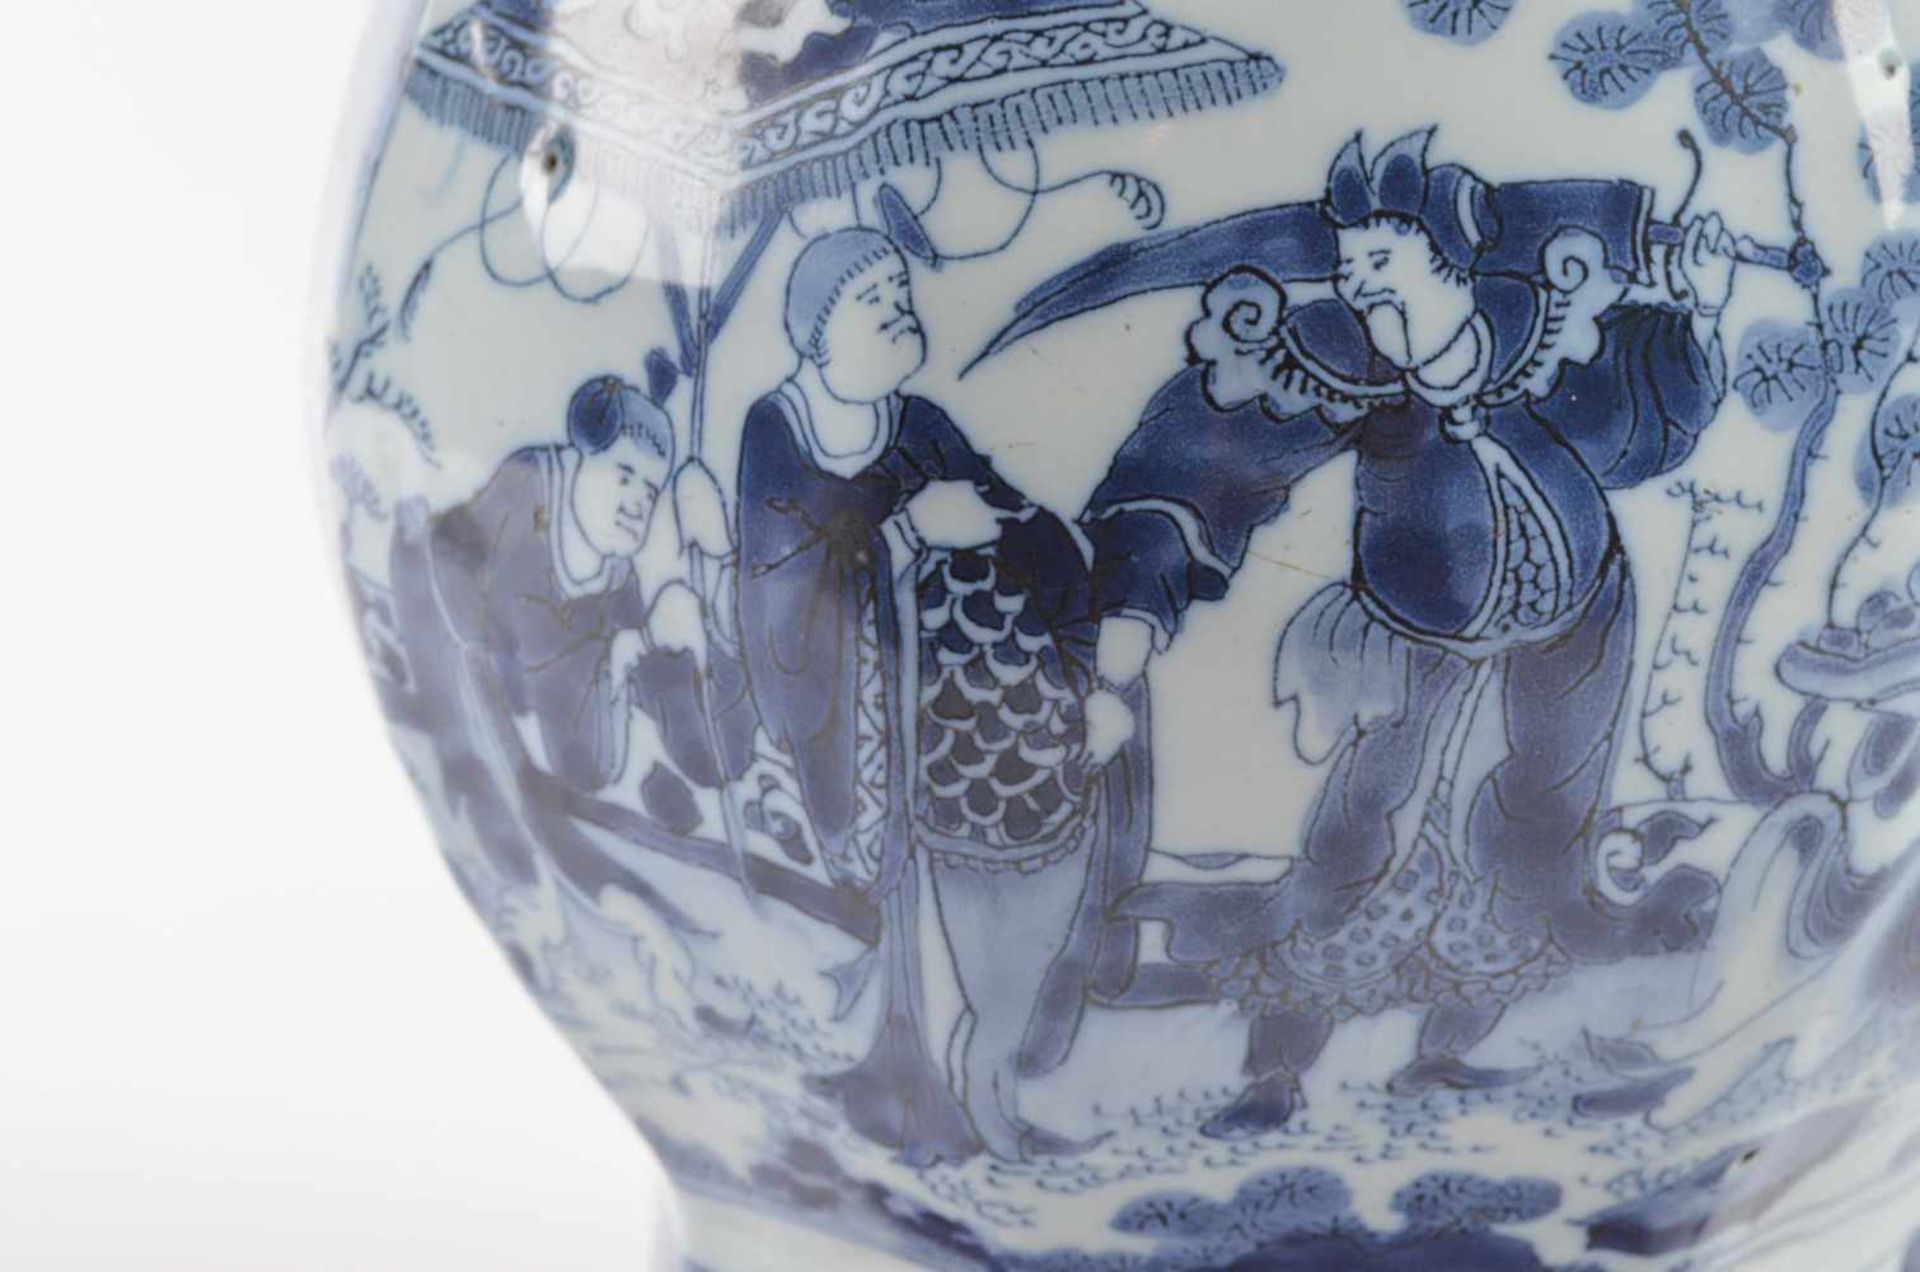 Lampe Delft 17. Jhd.blau und weiß Malerei mit chinesischem Dekor, ehemals Vase umgebaut zu einer - Bild 4 aus 4